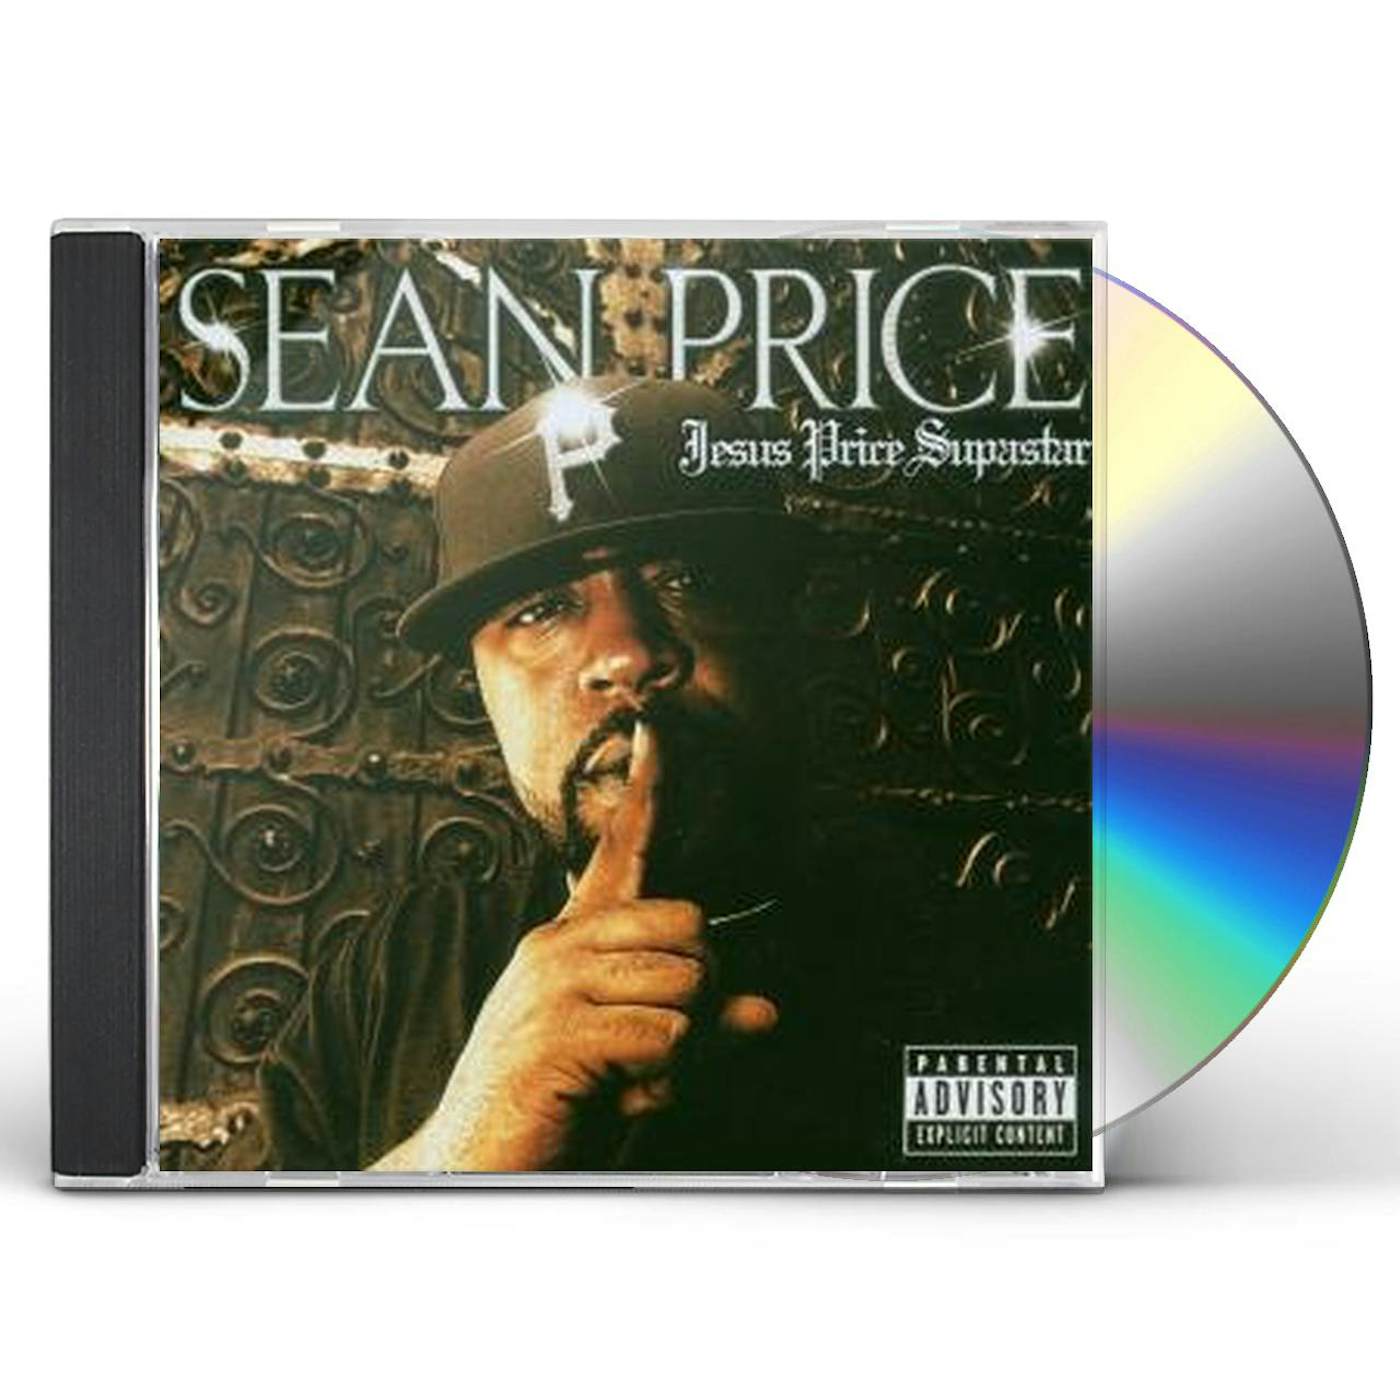 Sean Price JESUS PRICE SUPASTAR CD